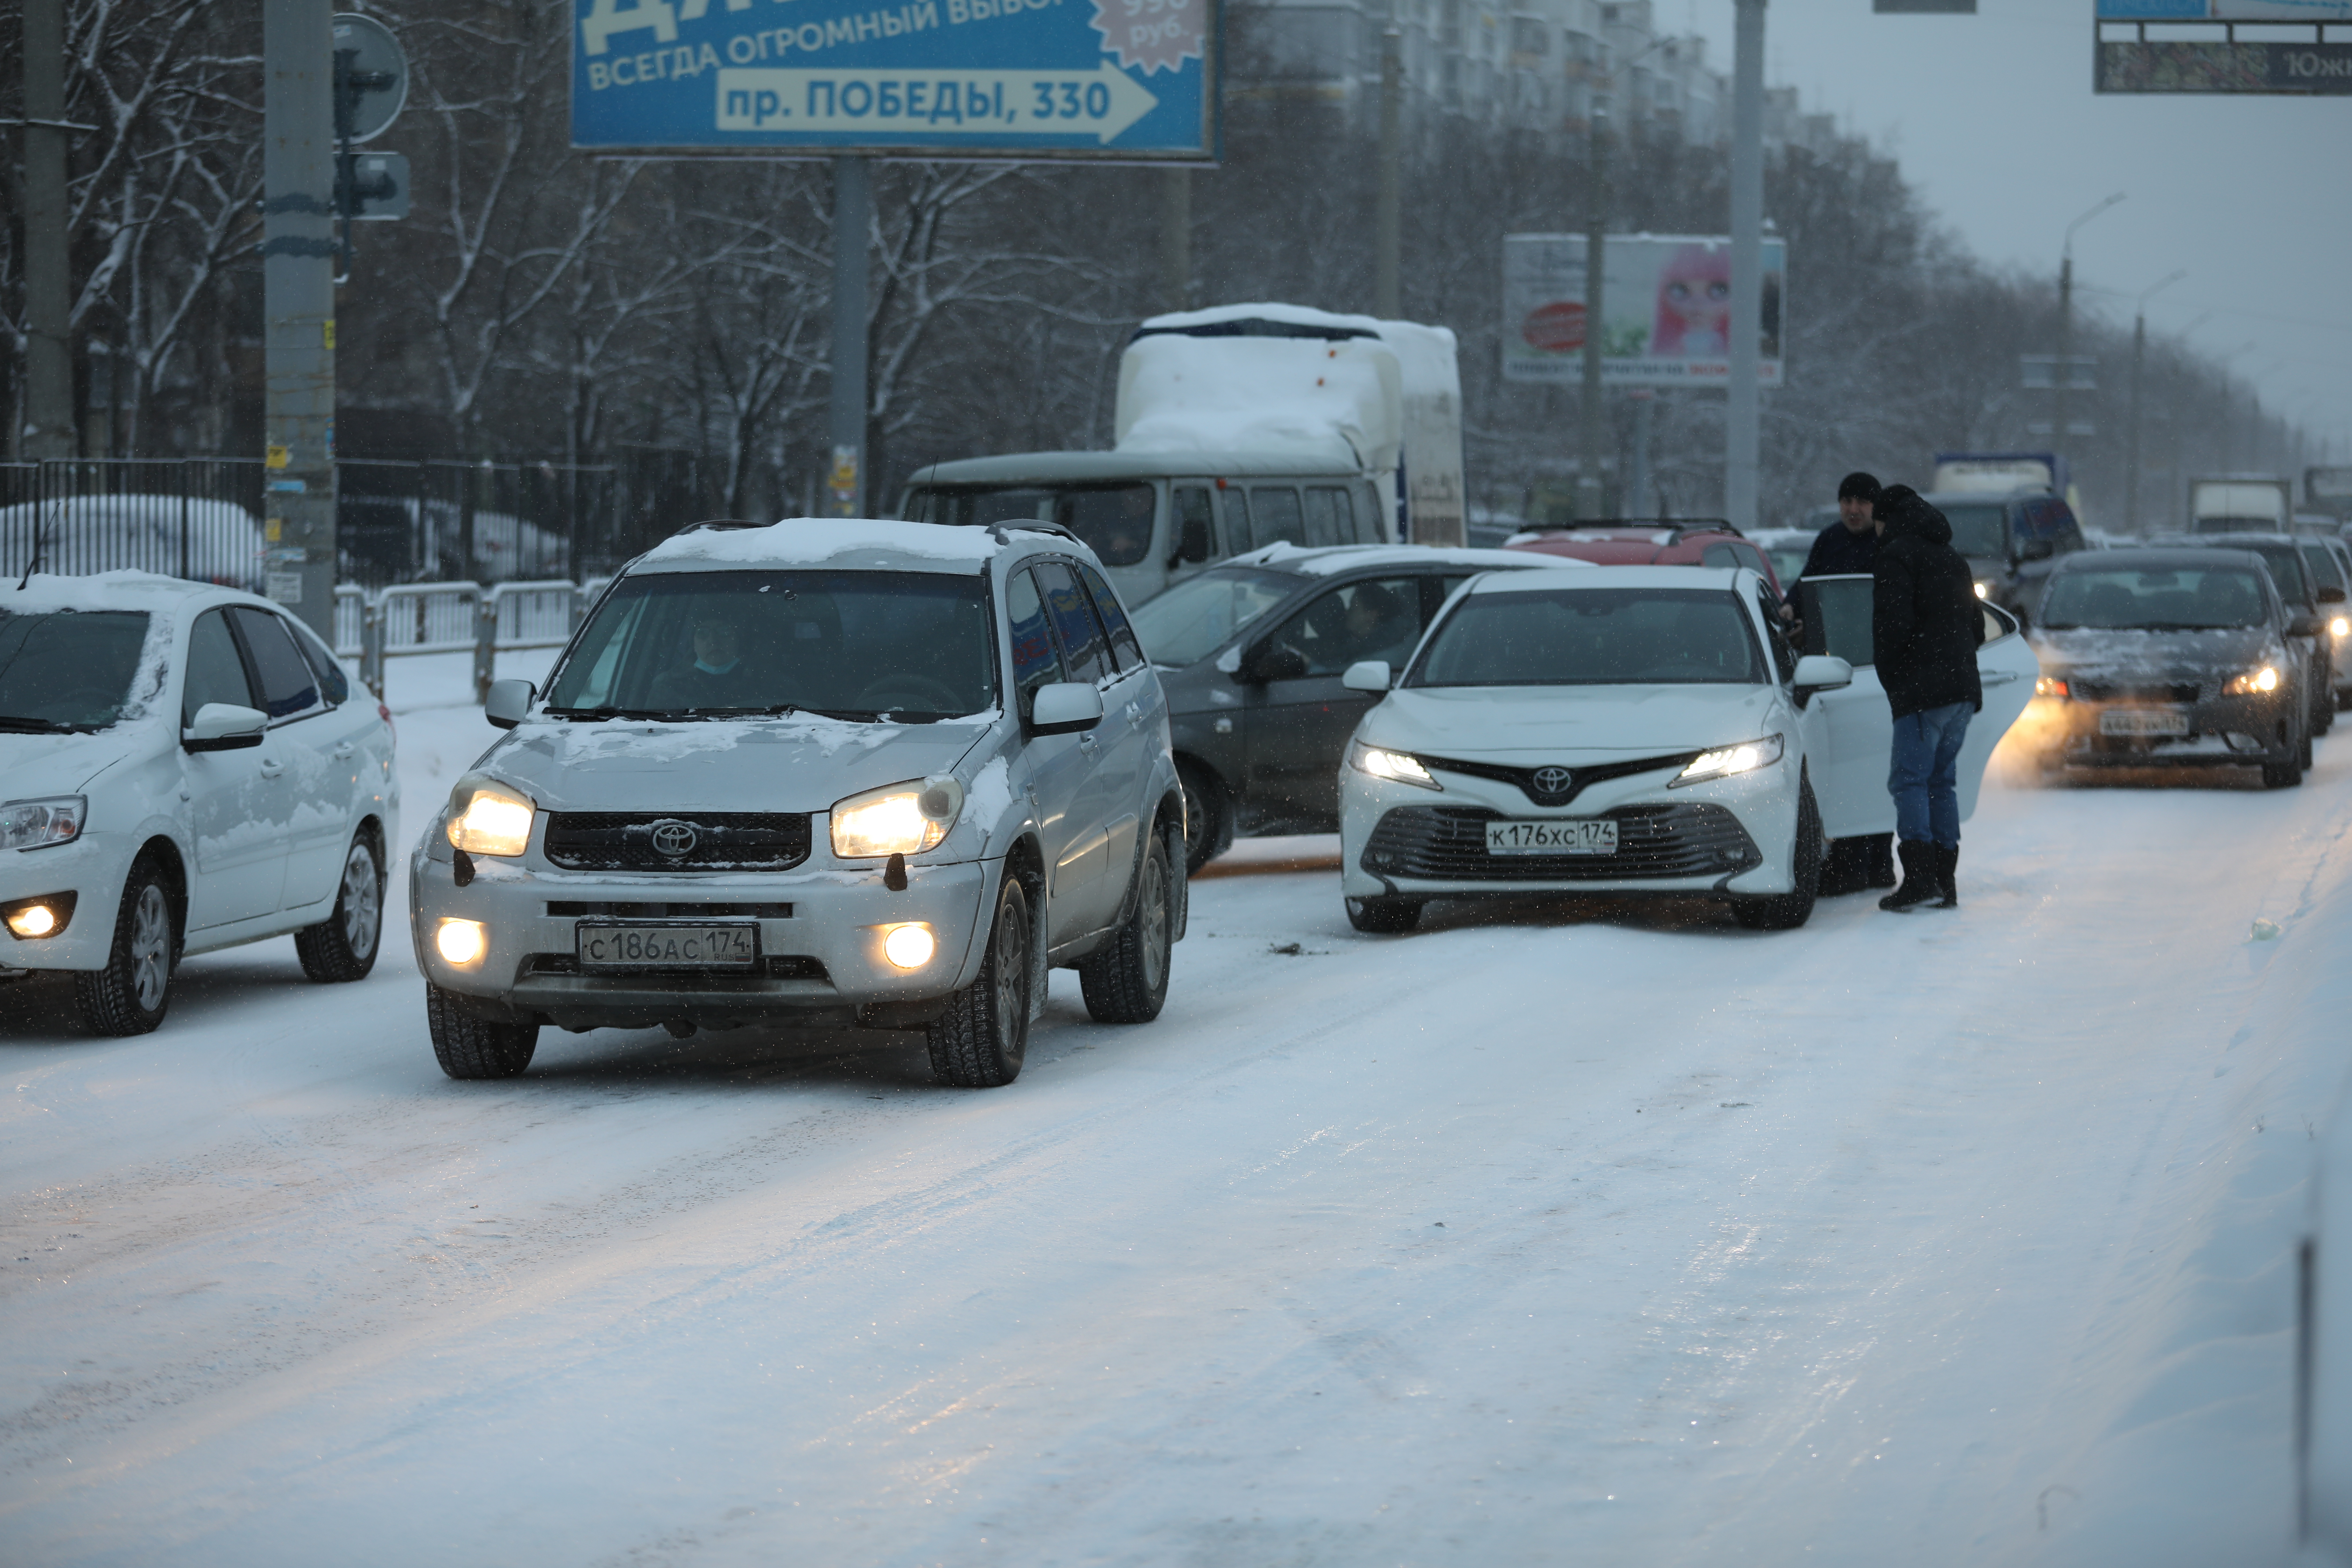 Массовое ДТП заблокировало дорогу в центре Челябинска в час пик*1